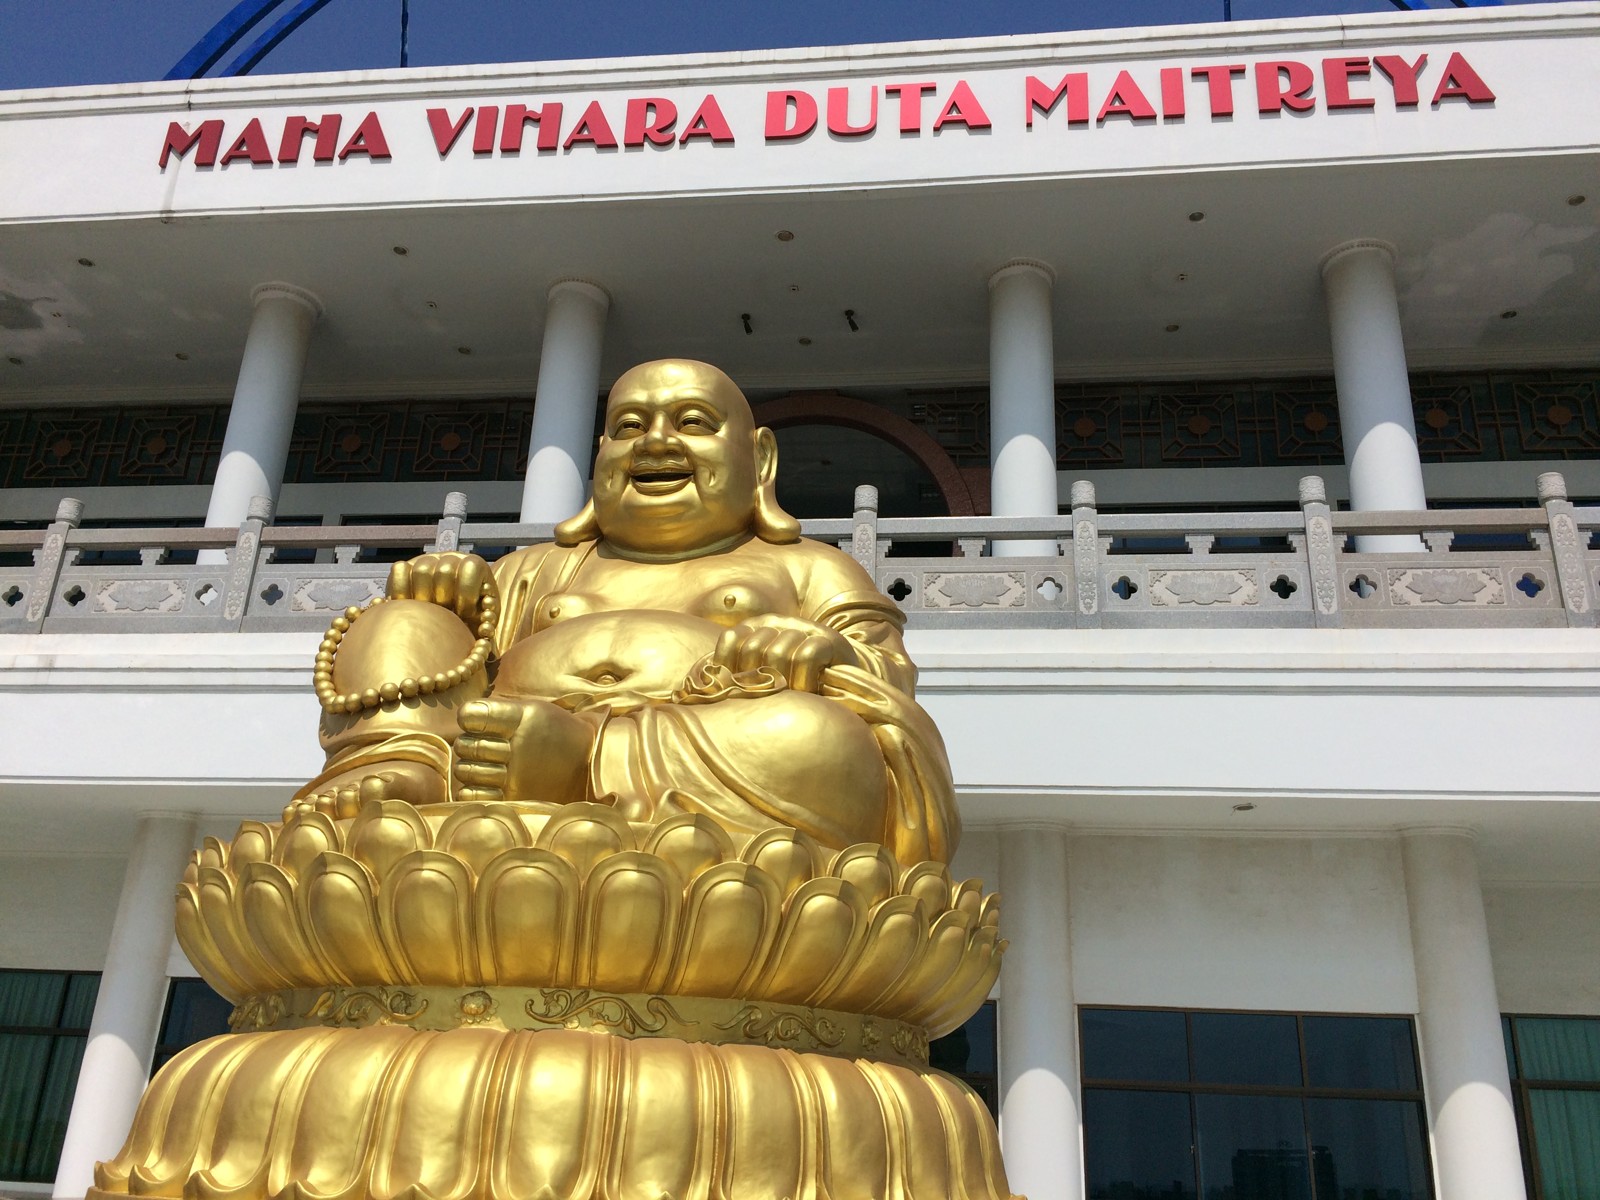 Maha Vihara Duta Maitreya